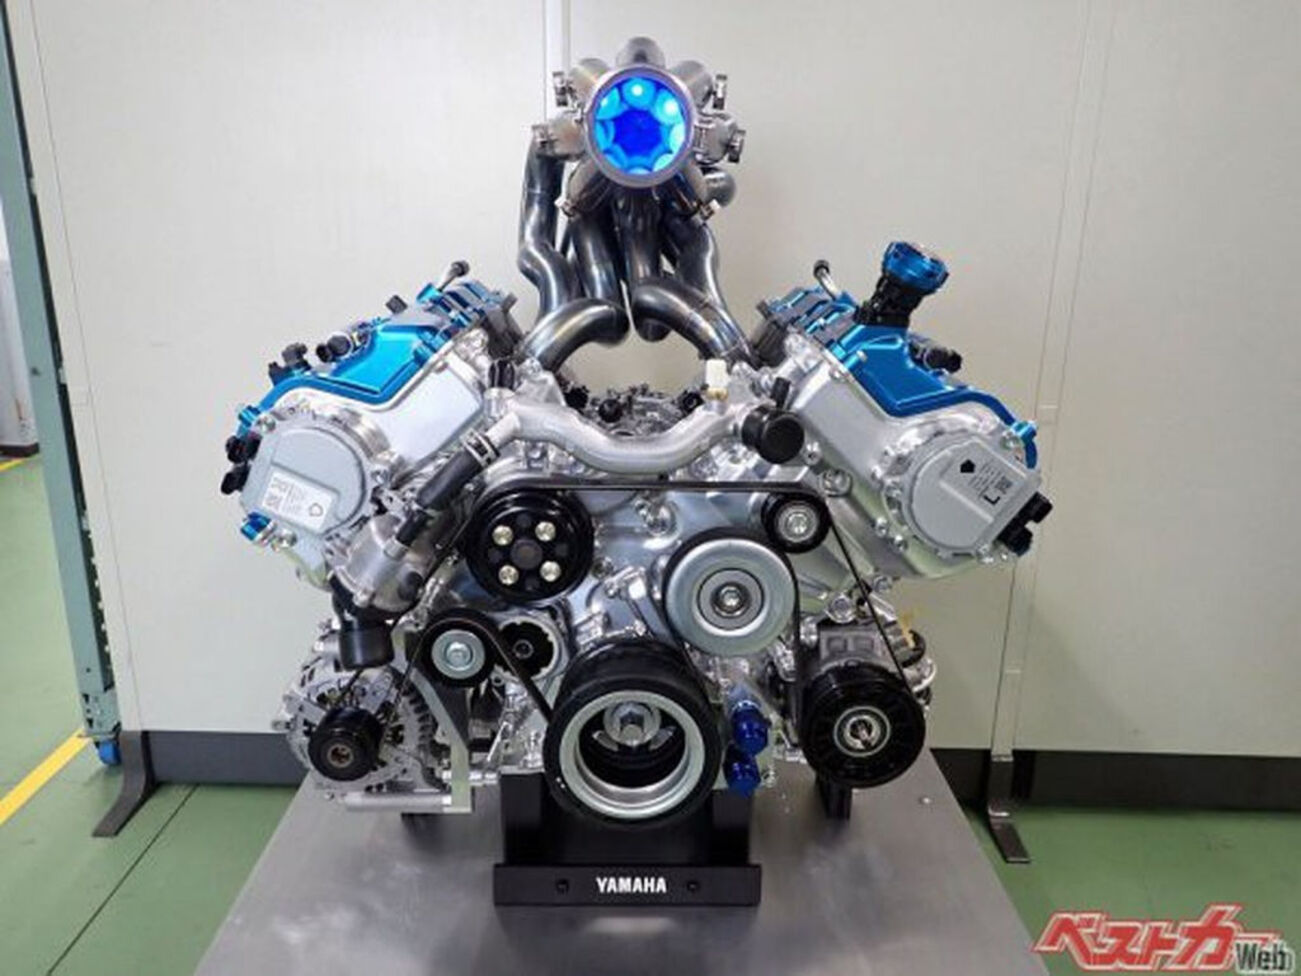 Yamaha cria primeiro motor V8 movido a hidrogênio em toda indústria automotiva